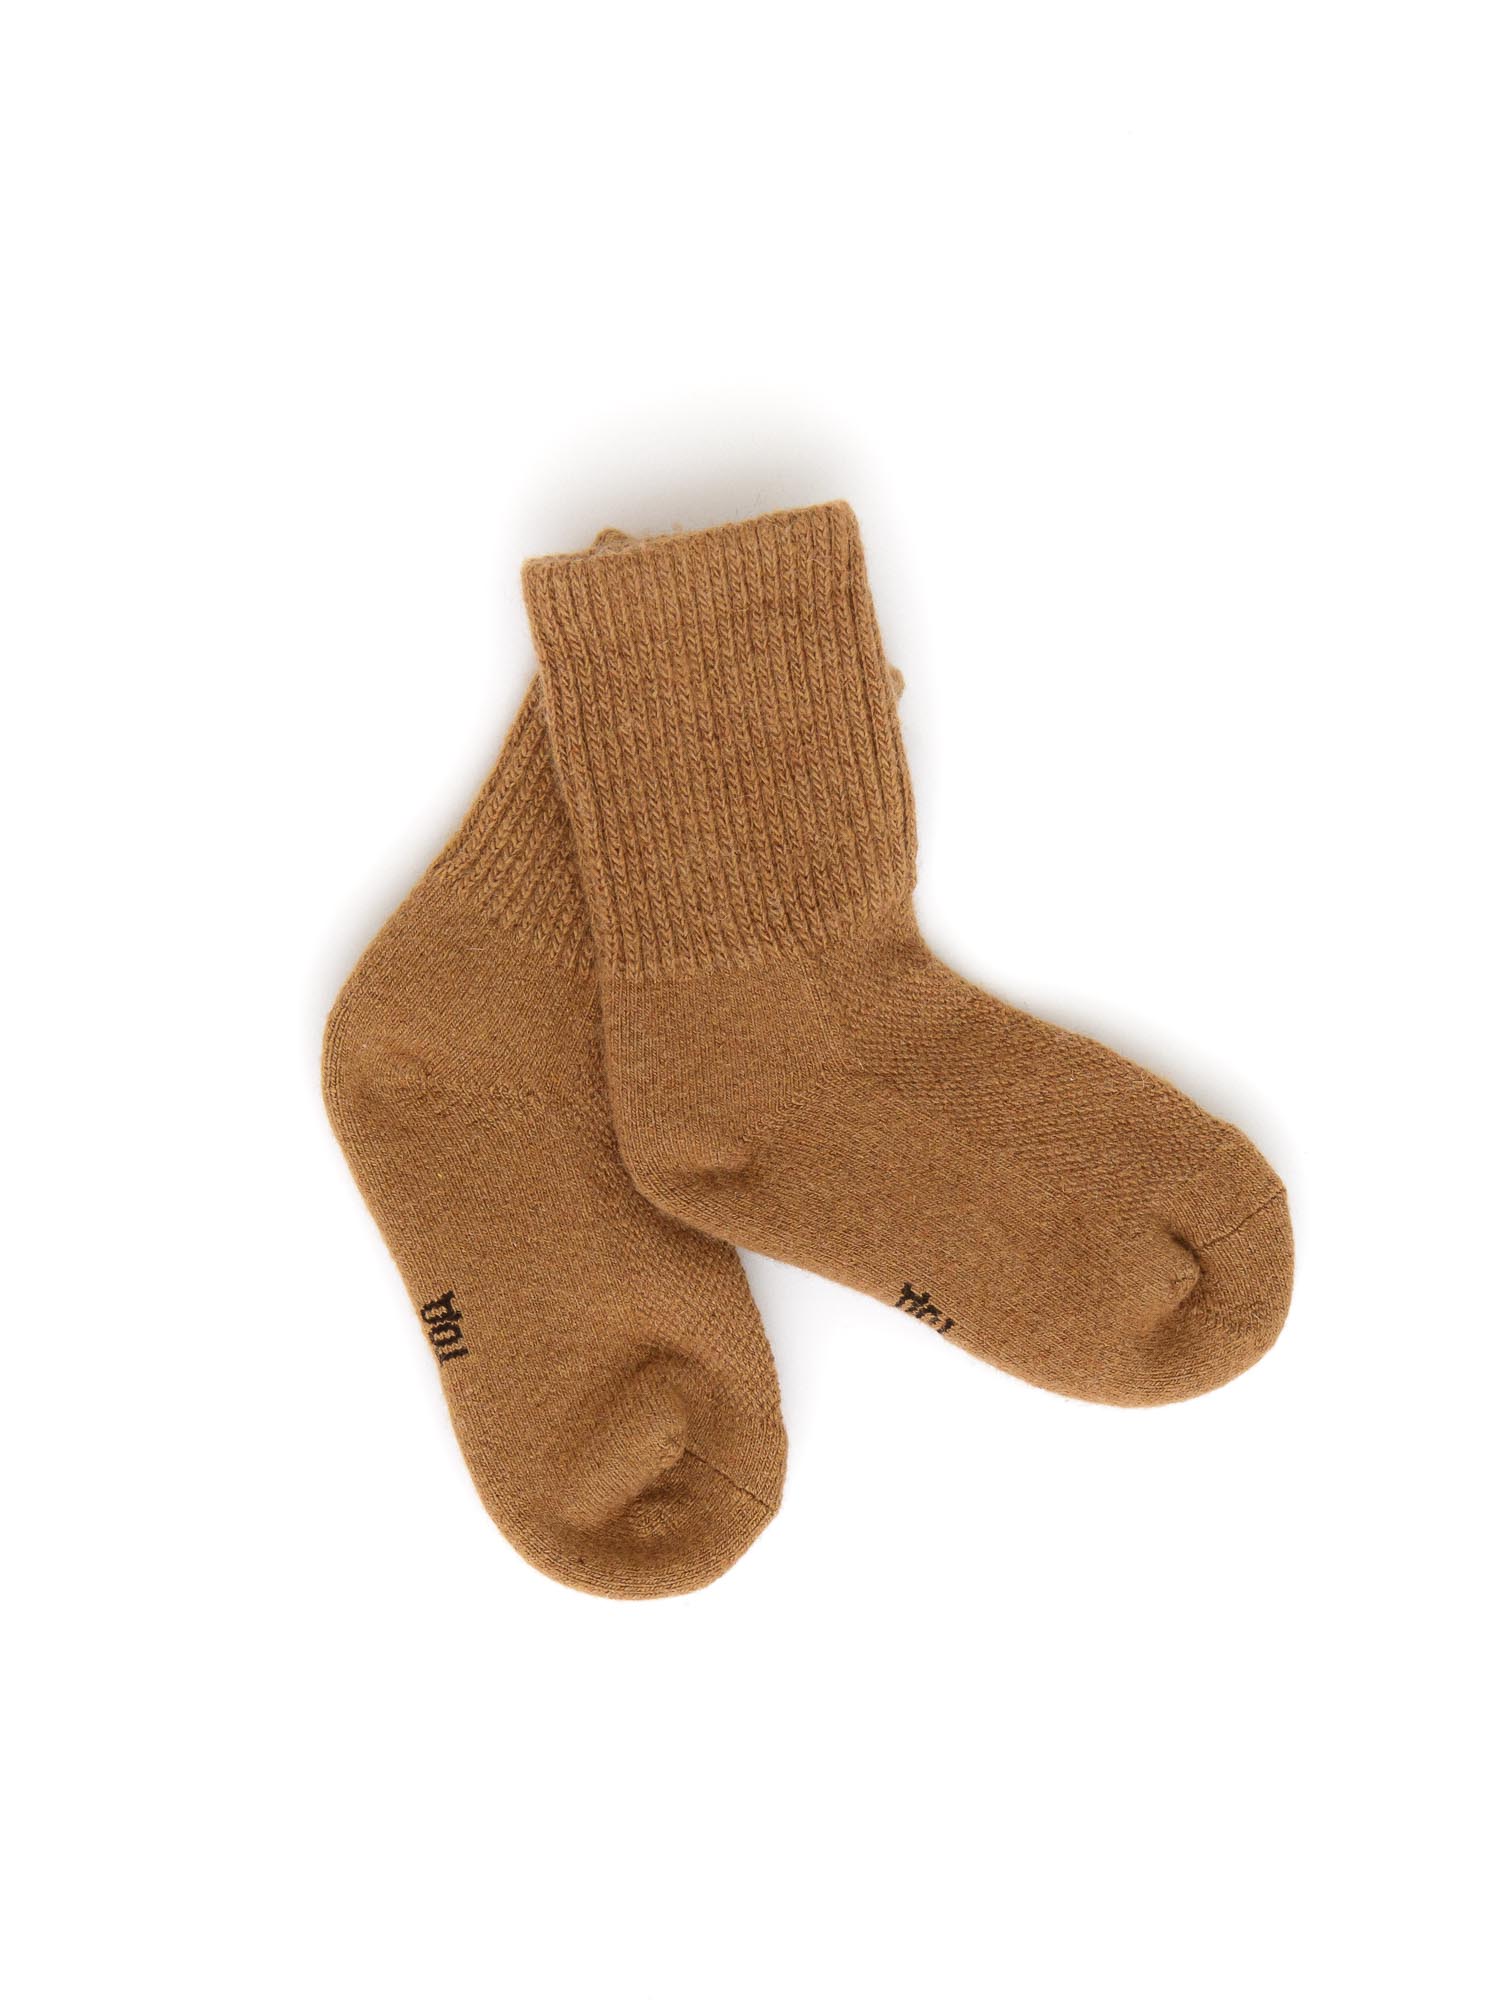 Детские носки из монгольской шерсти 2Р ТОД ОЙМС ХХК, цвет рыжий, размер 2 (12-14 см) - фото 1